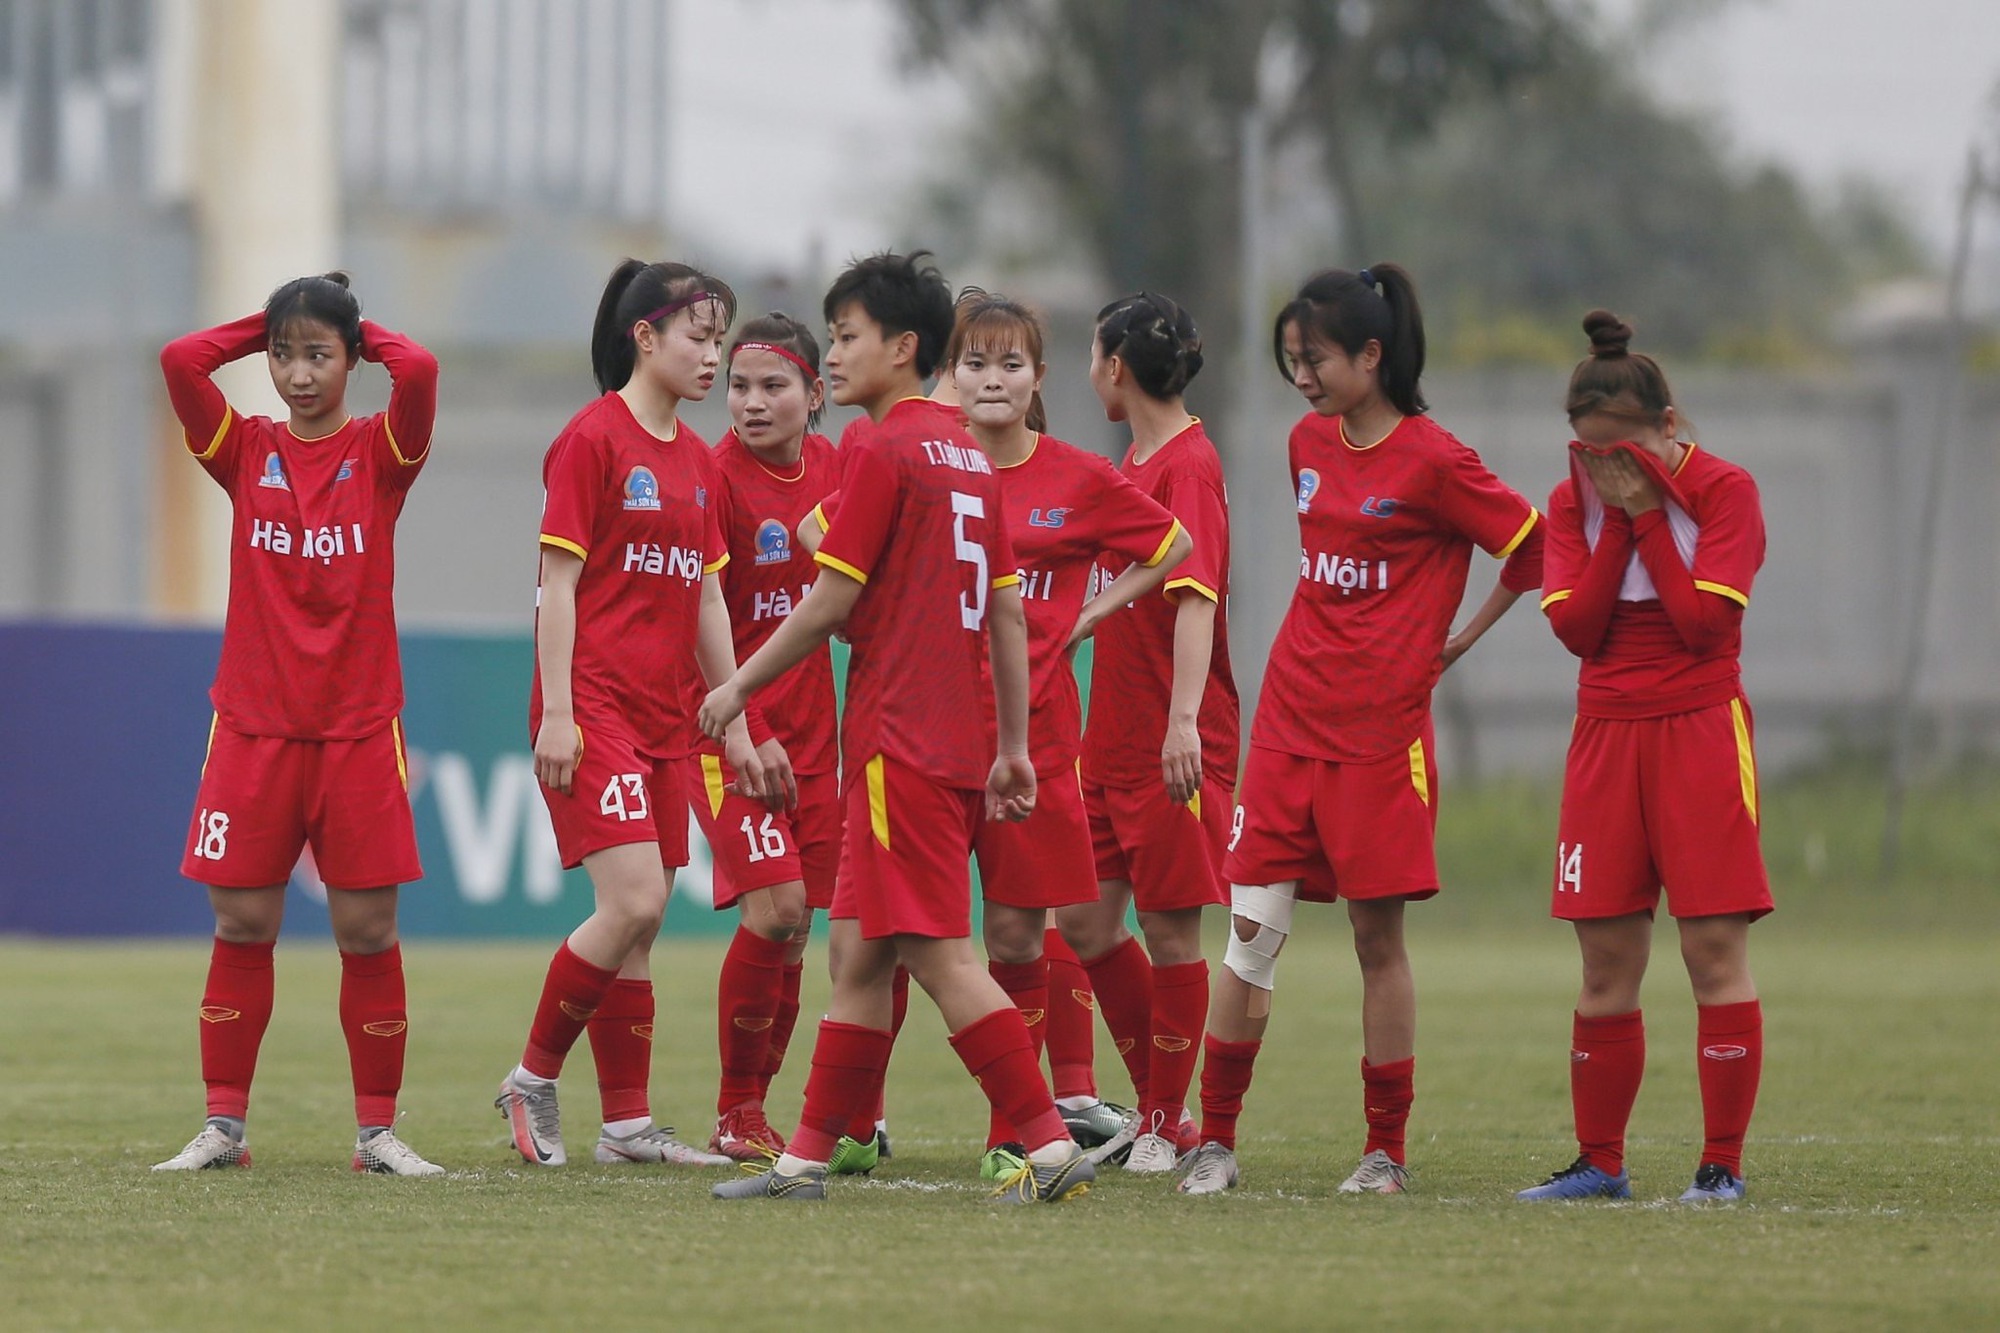 CLB bóng đá nữ Than khoáng sản Việt Nam lần đầu đoạt cúp quốc gia  - Ảnh 6.